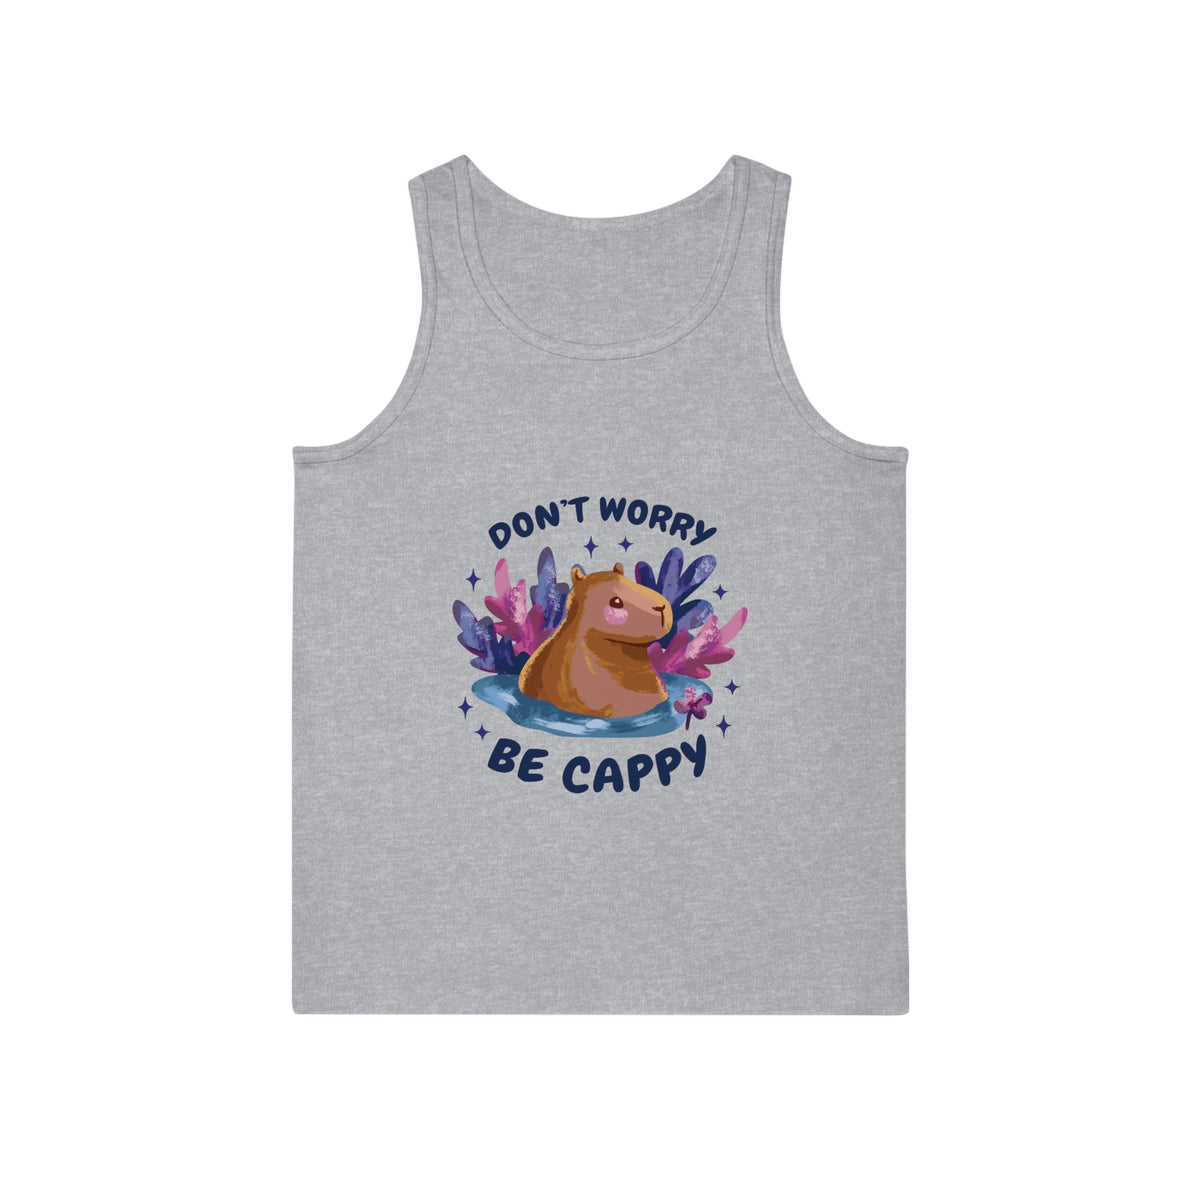 Chill Capybara